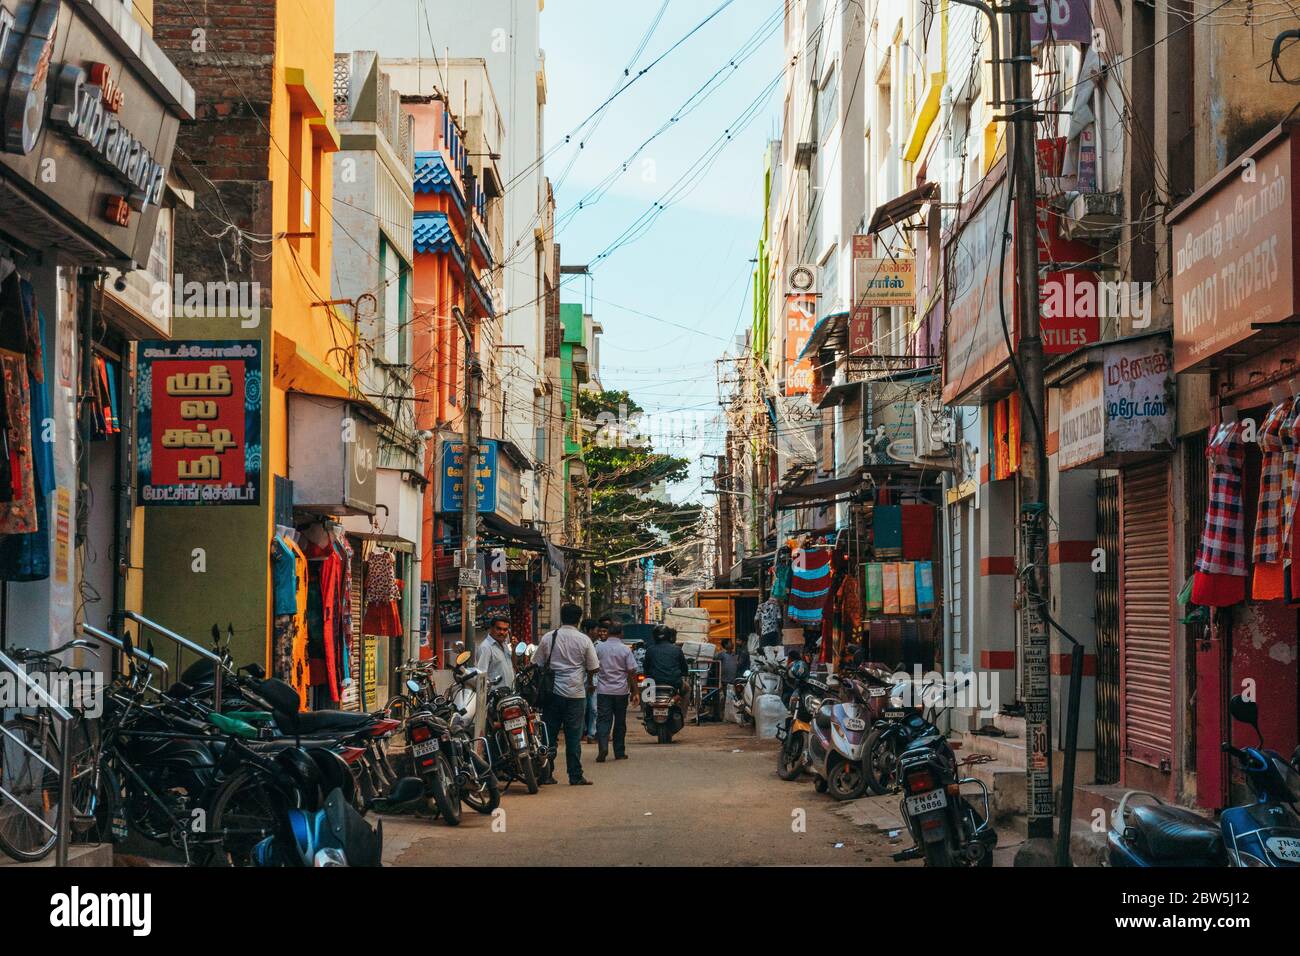 Une rue étroite de la ville à Madurai, Inde Banque D'Images